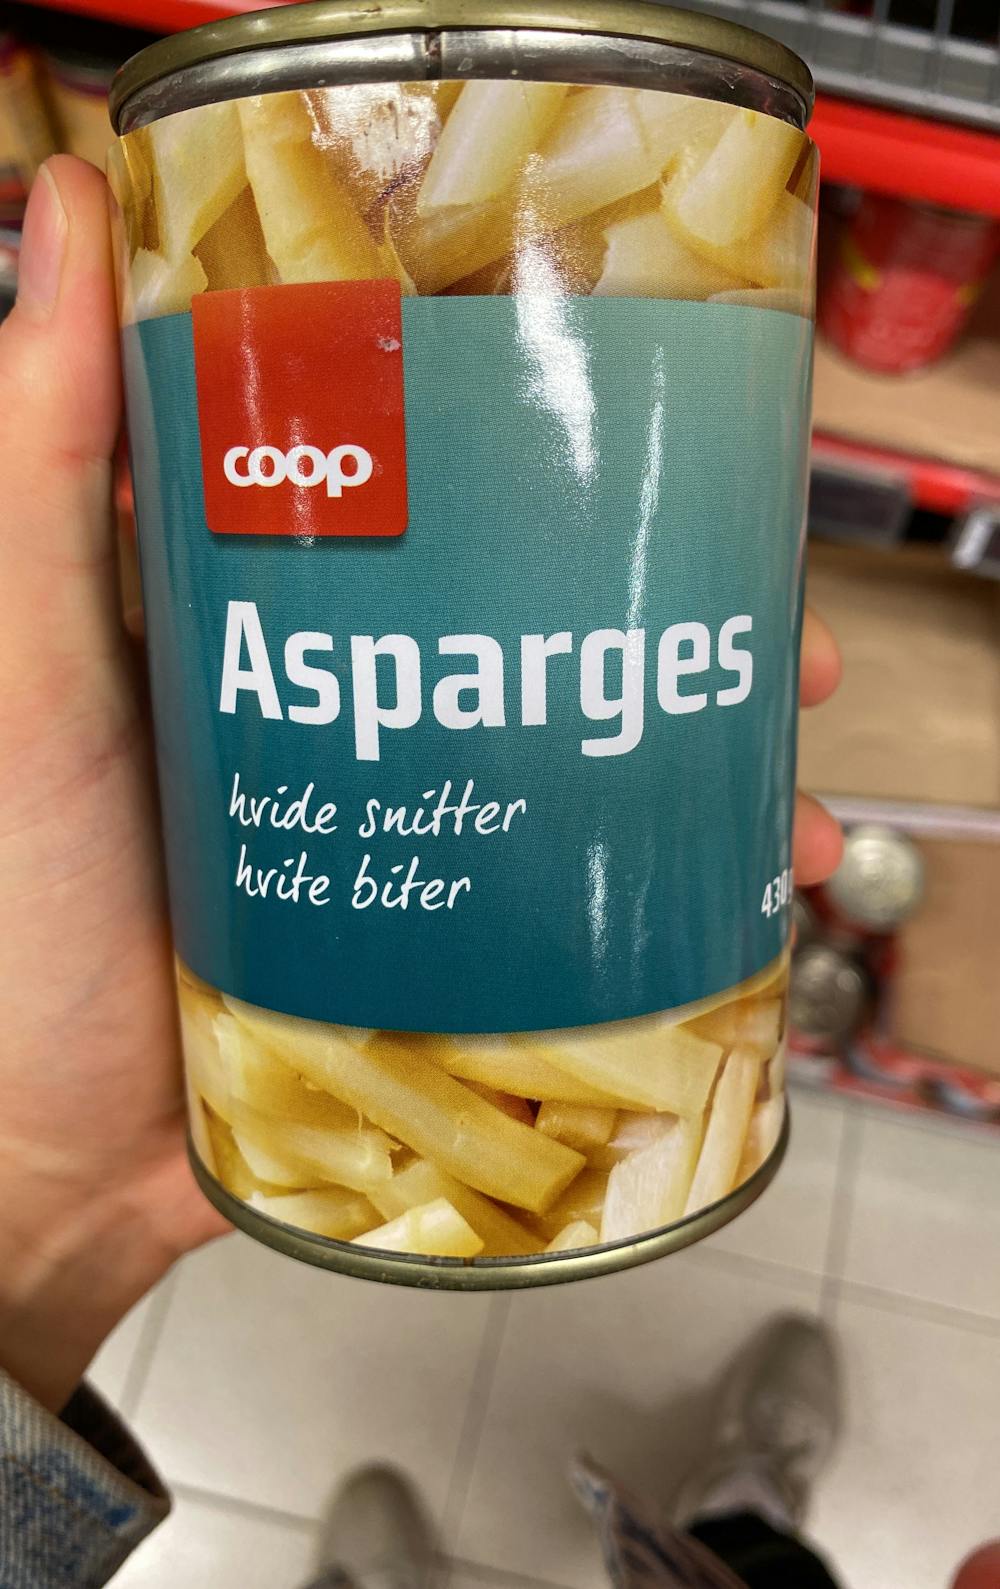 Asparges, Coop